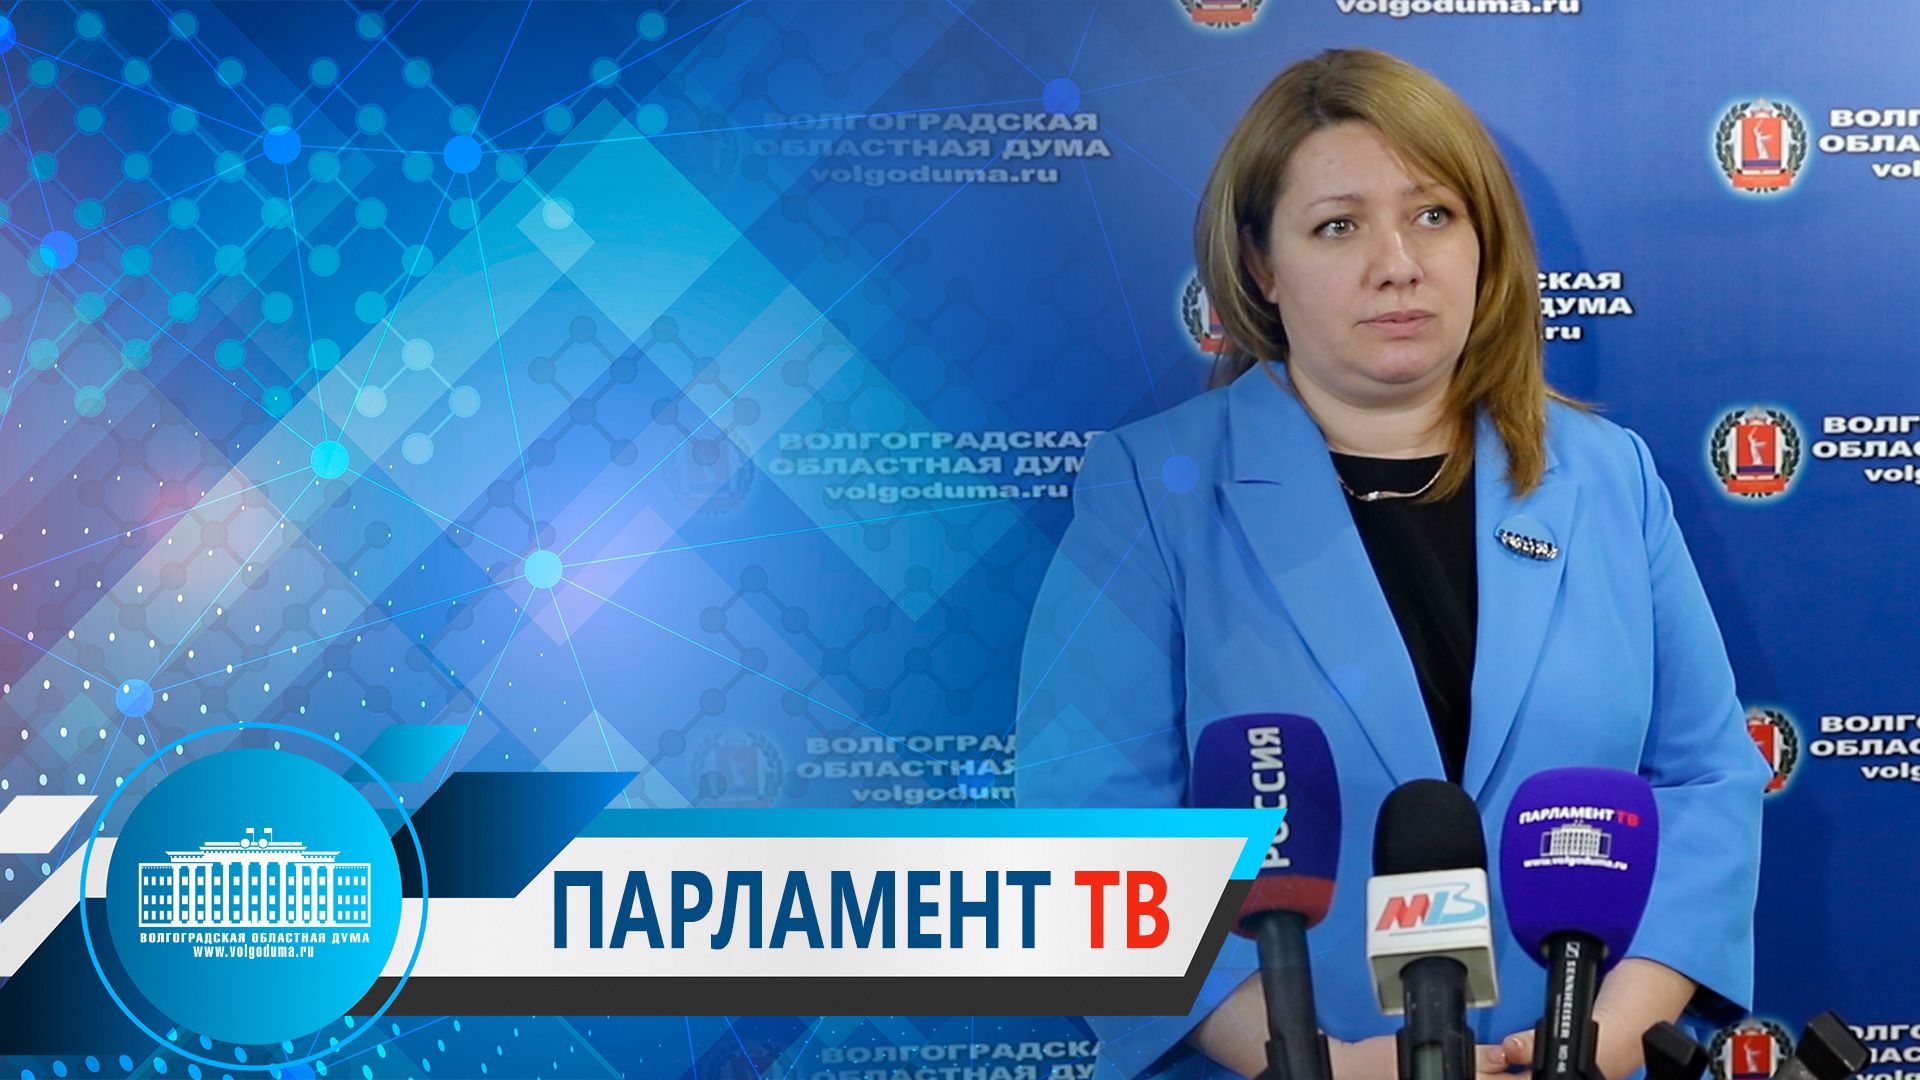 Татьяна Текучева: "Необходимо выработать механизм минимизации управляющими компаниями потерь при содержании общего имущества"